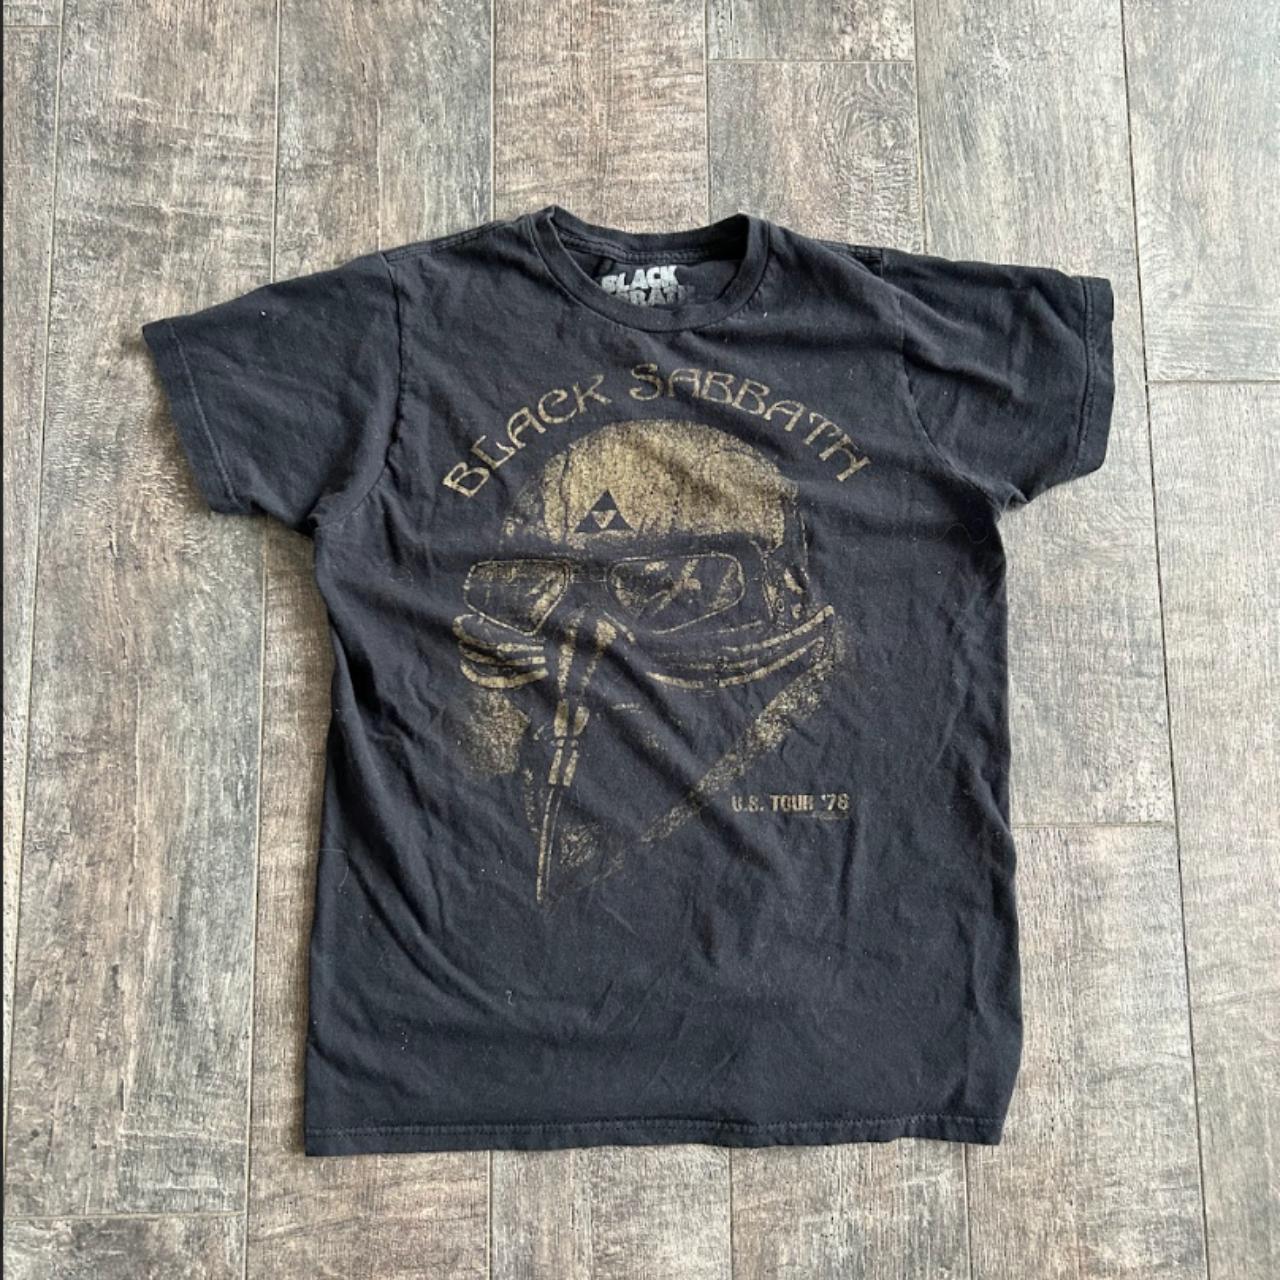 Black Sabbath Tee Shirt US Tour Tee '78 This Shirt... - Depop